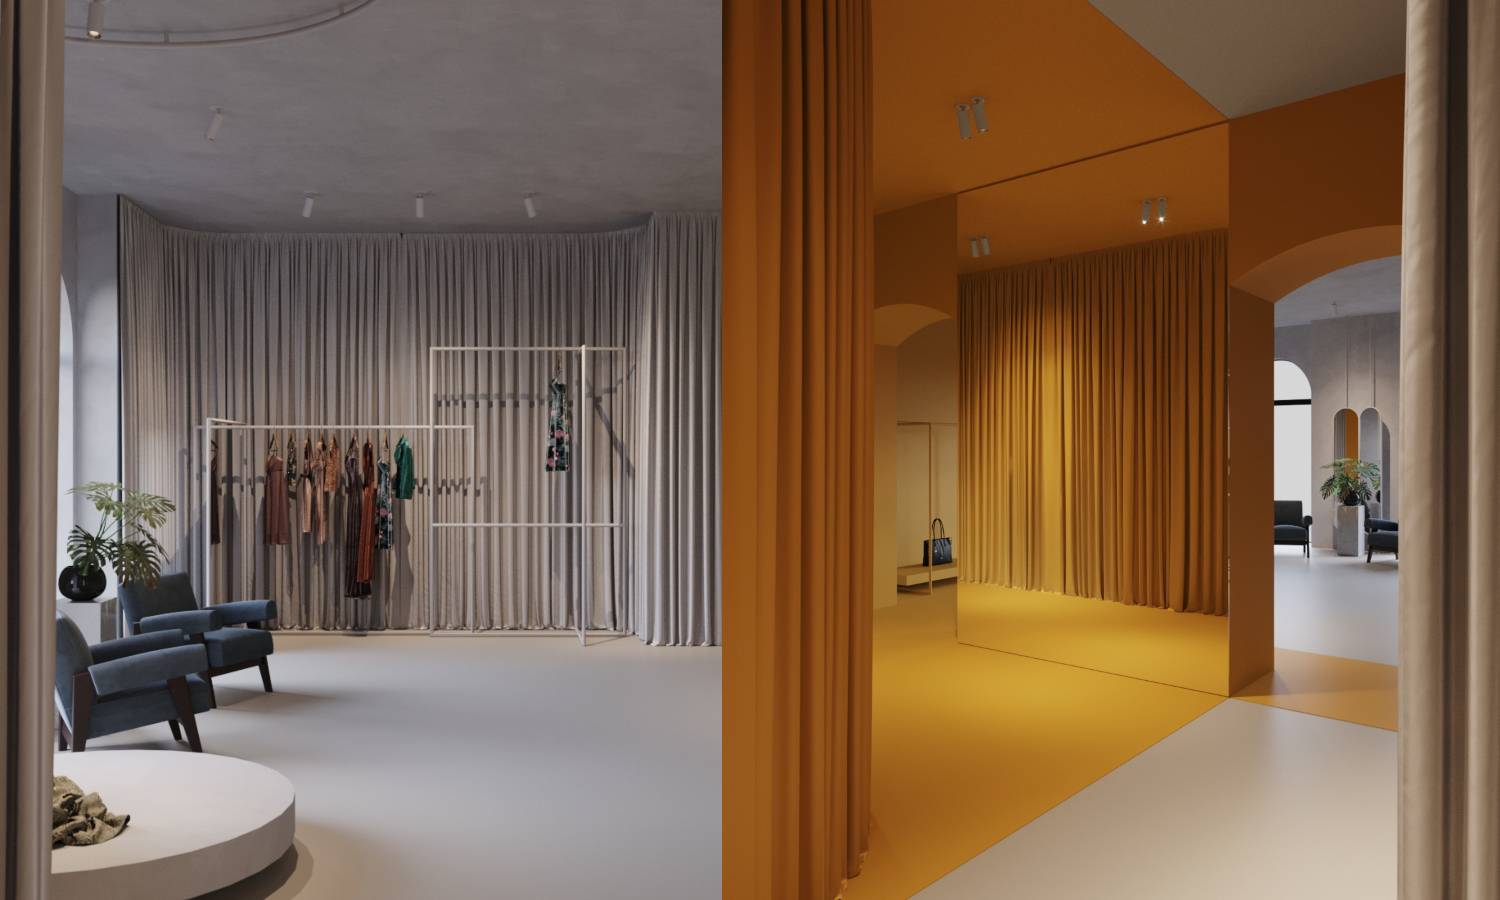 Dizajner Ivan Alduk predstavlja svoj novi elegantan showroom